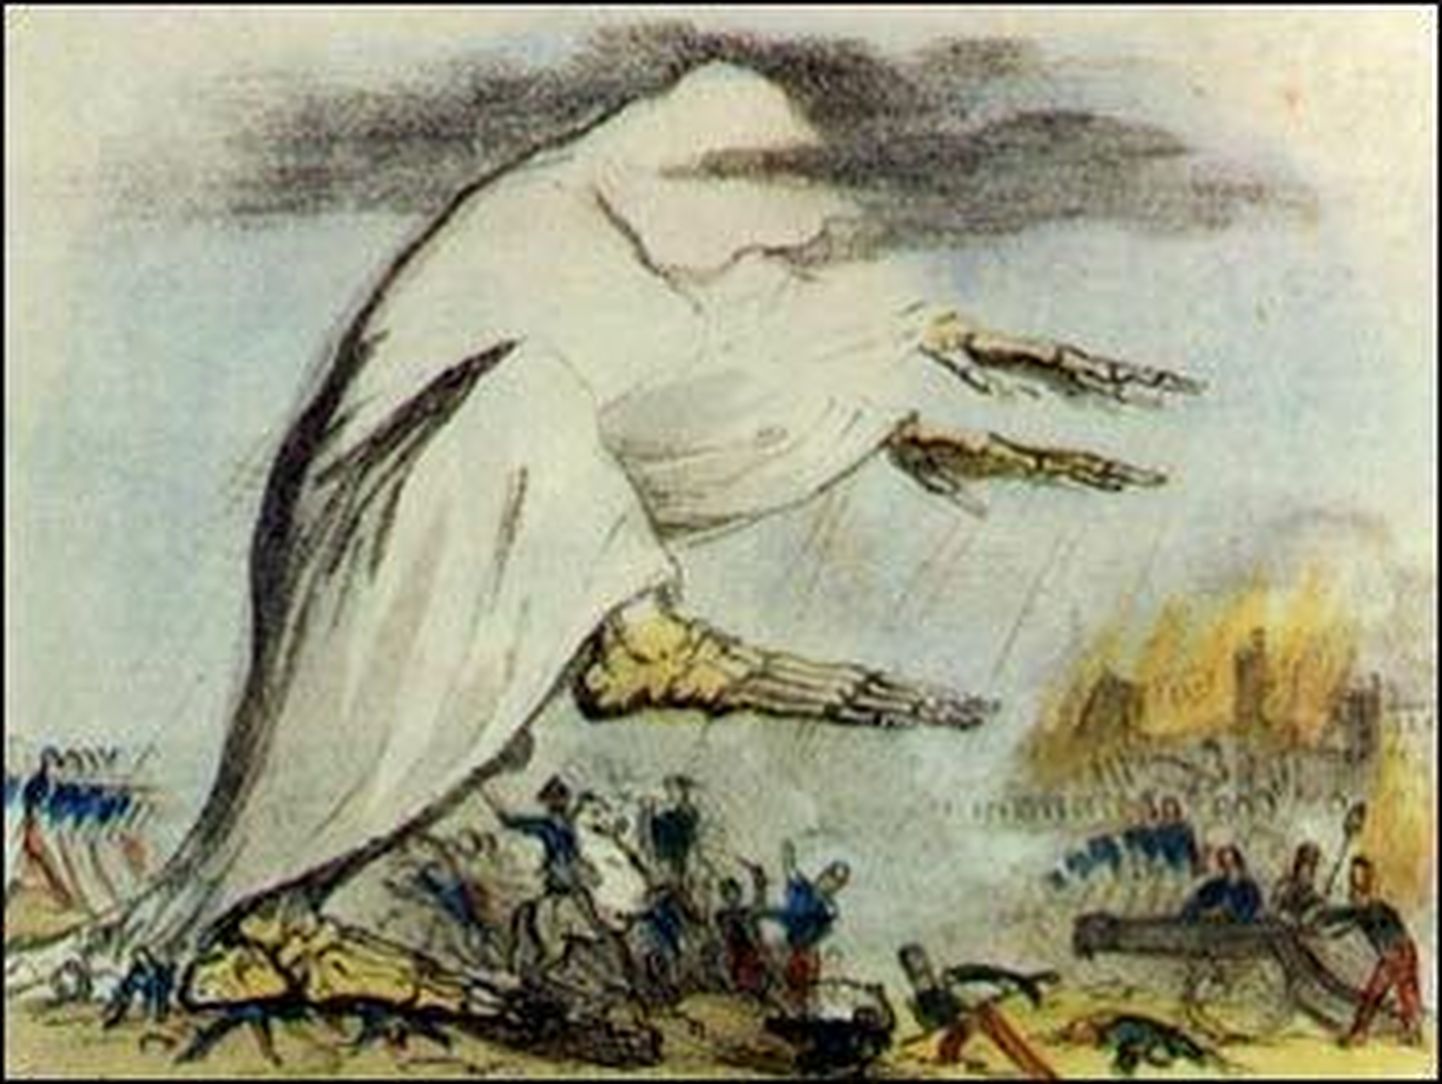 Fekaal-oraalselt leviv koolera oli üks 19. sajandi hirmsamaid ja kardetumaid epideemilisi haigusi. Robert Seymouri (1798–1836) illustratsioon.